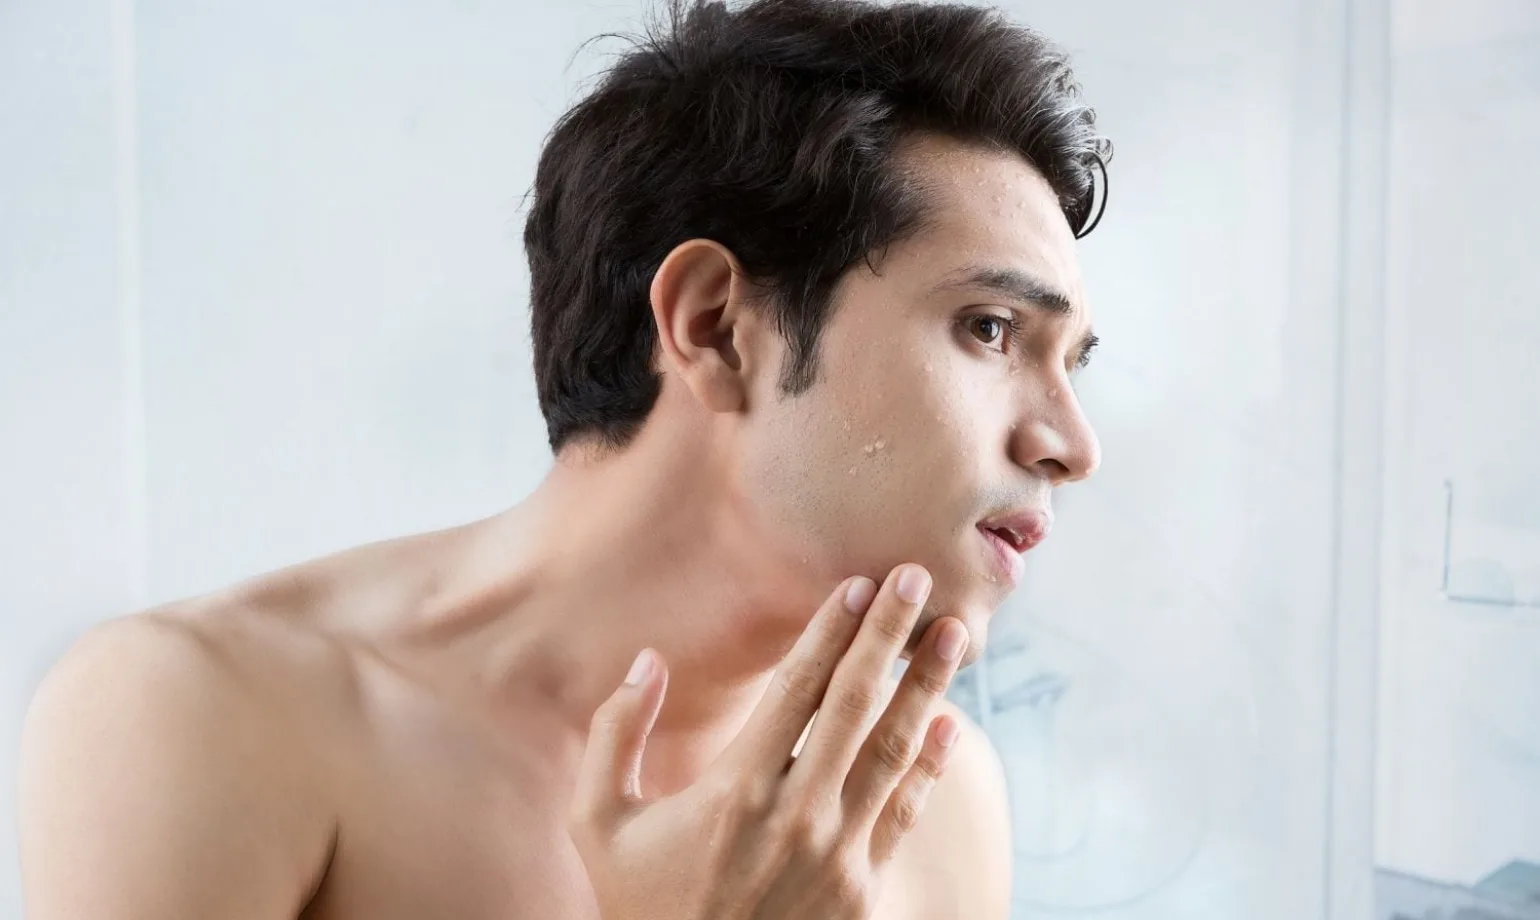 Befeuchten Sie Ihre Haut immer mit Feuchtigkeit, um zu verhindern, dass die Haut nach einer Rasur austrocknet